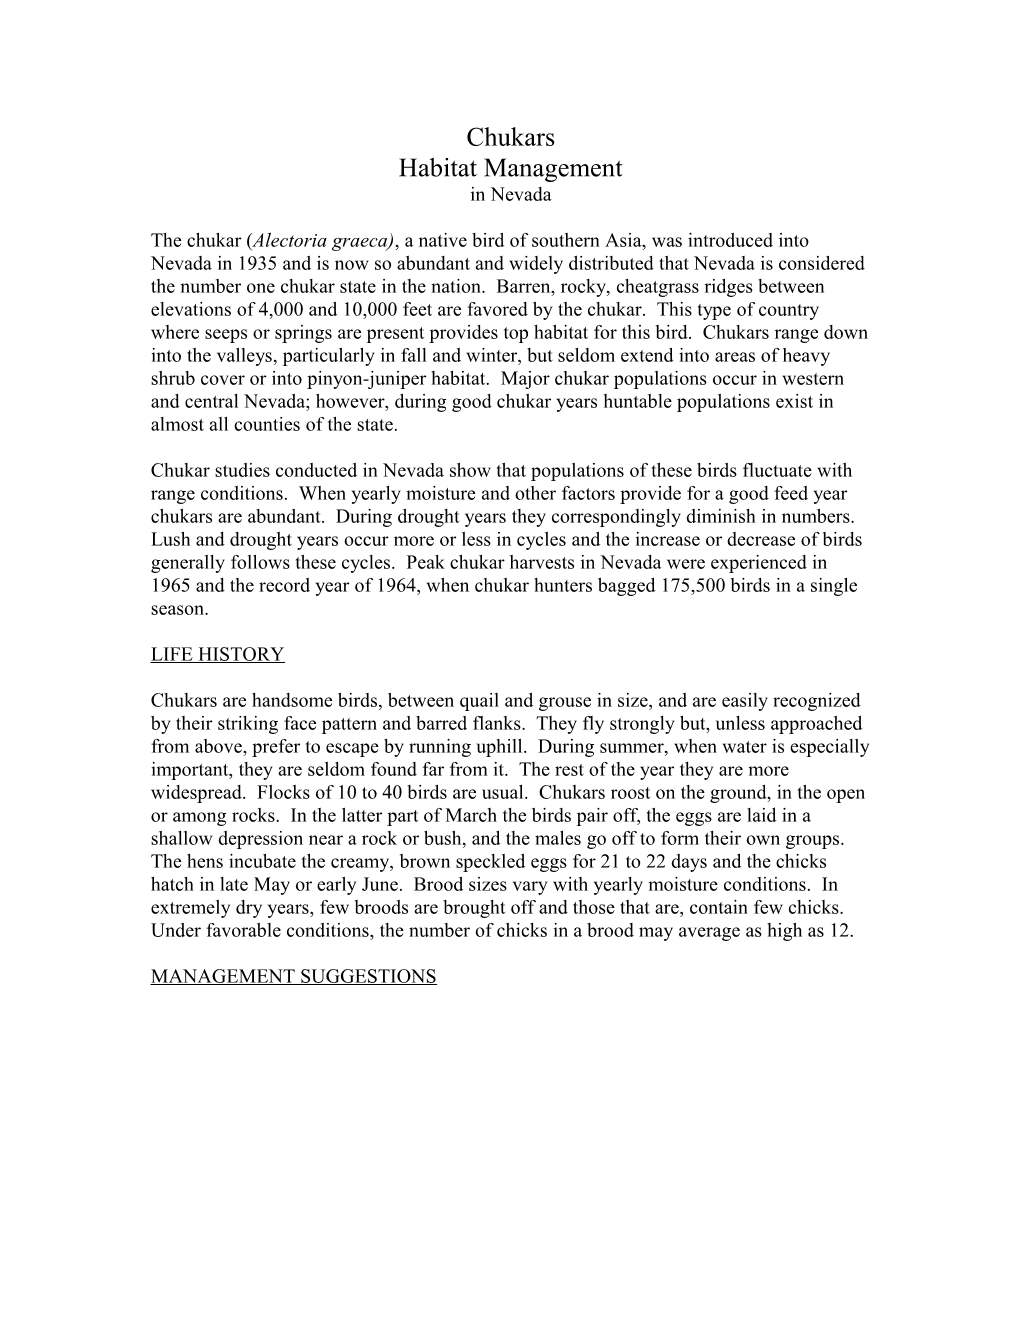 Habitat Management for Chukars